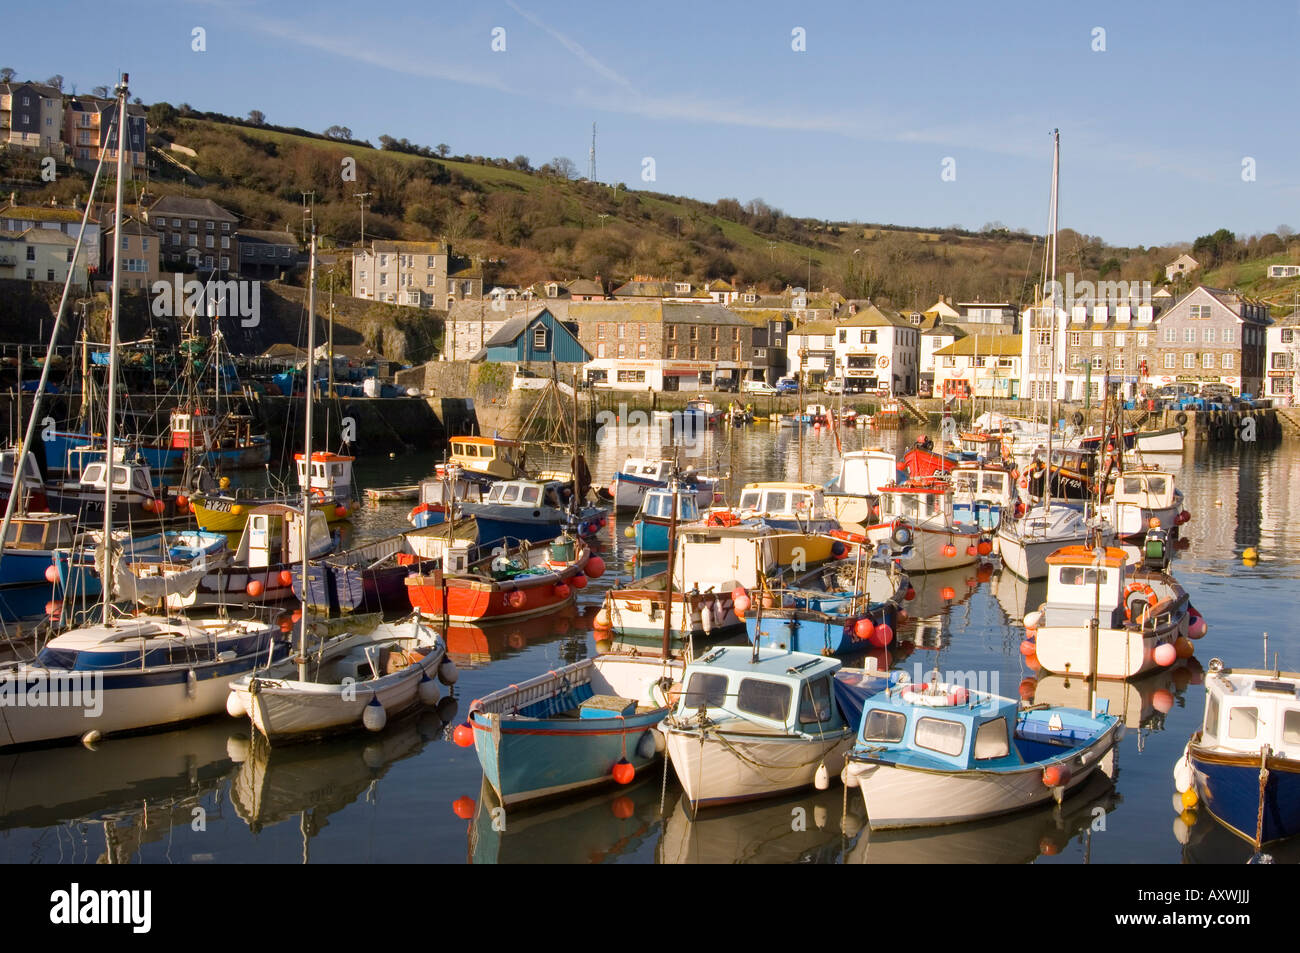 La colorata vecchia in legno barche da pesca nel porto, Mevagissey, Cornwall, England, Regno Unito, Europa Foto Stock